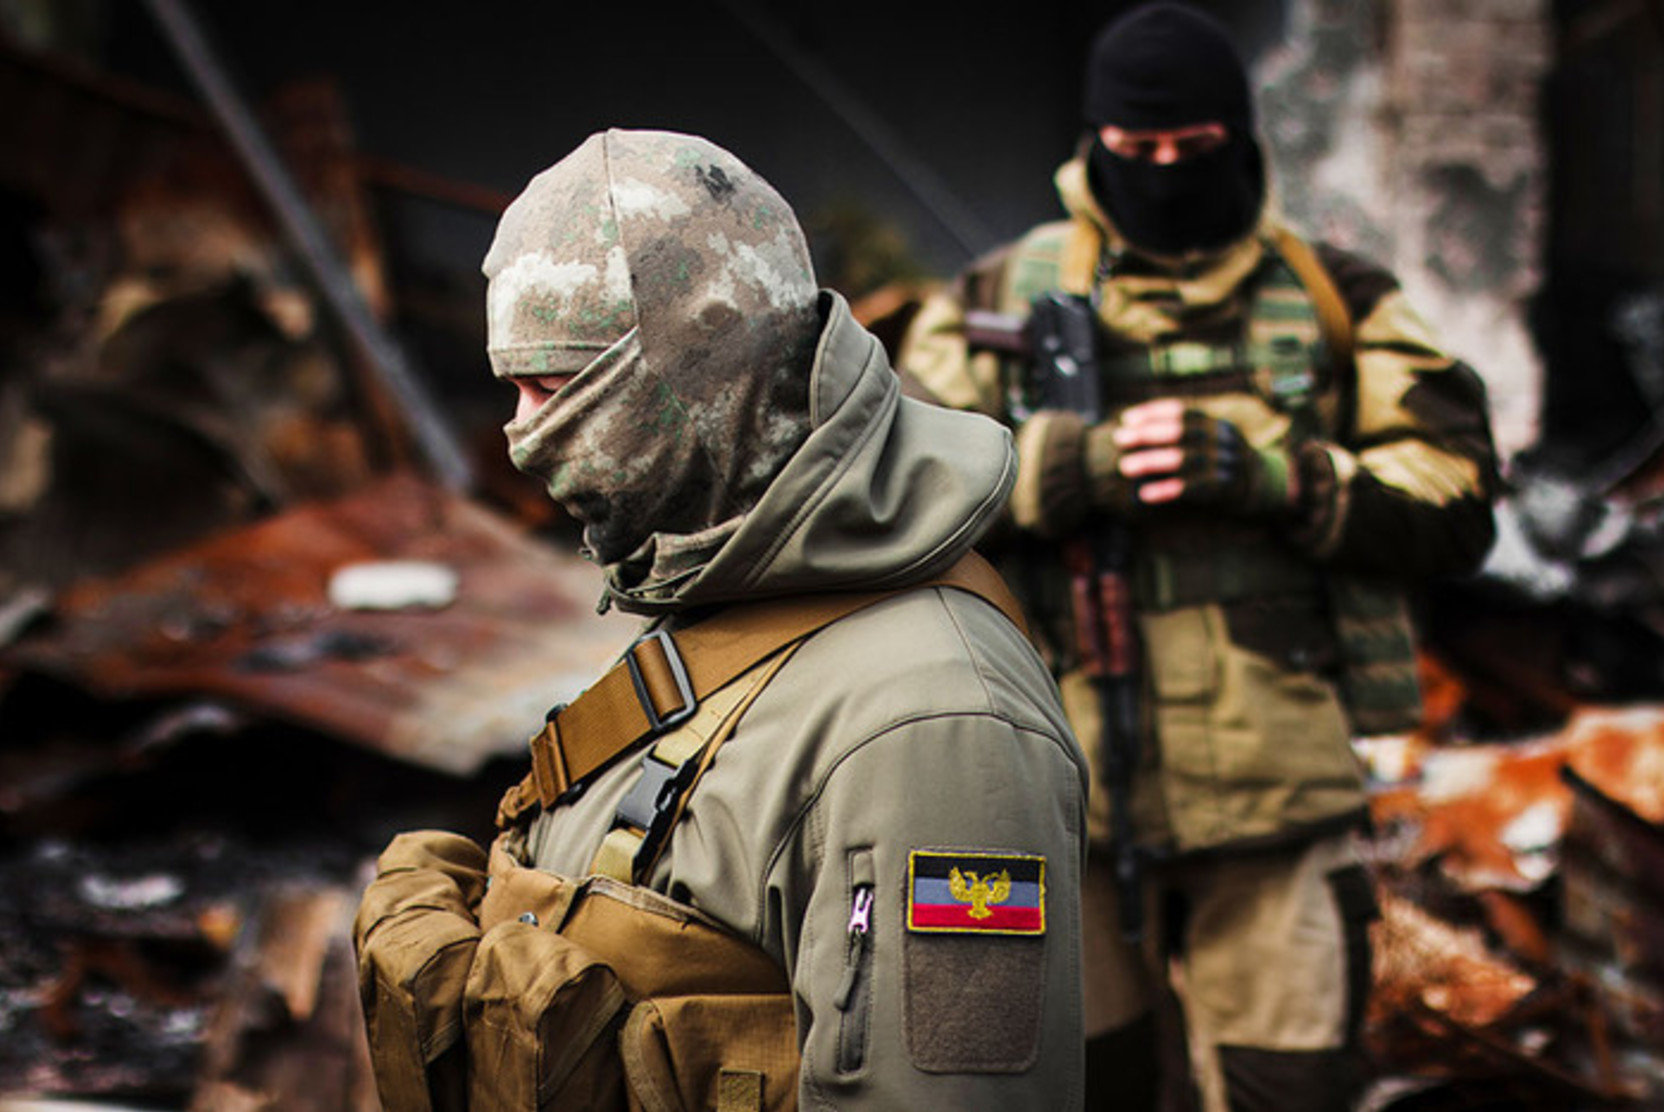 «Подтянули танки и авиацию». Стрелков назвал сроки наступления ВСУ в Донбассе